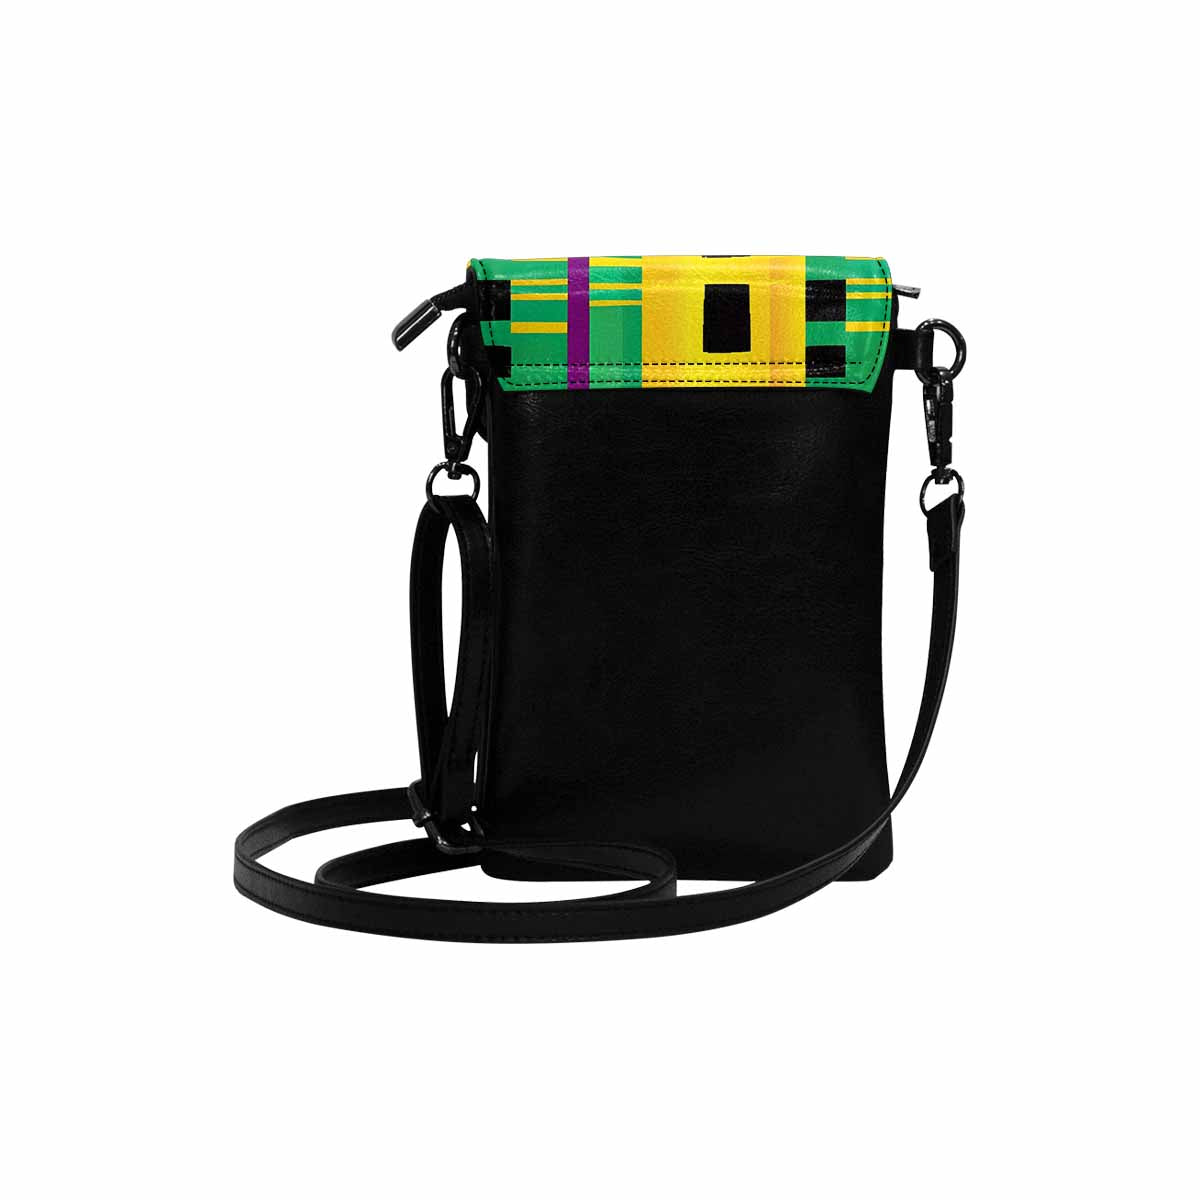 African art, cell phone, keys purse, design 49